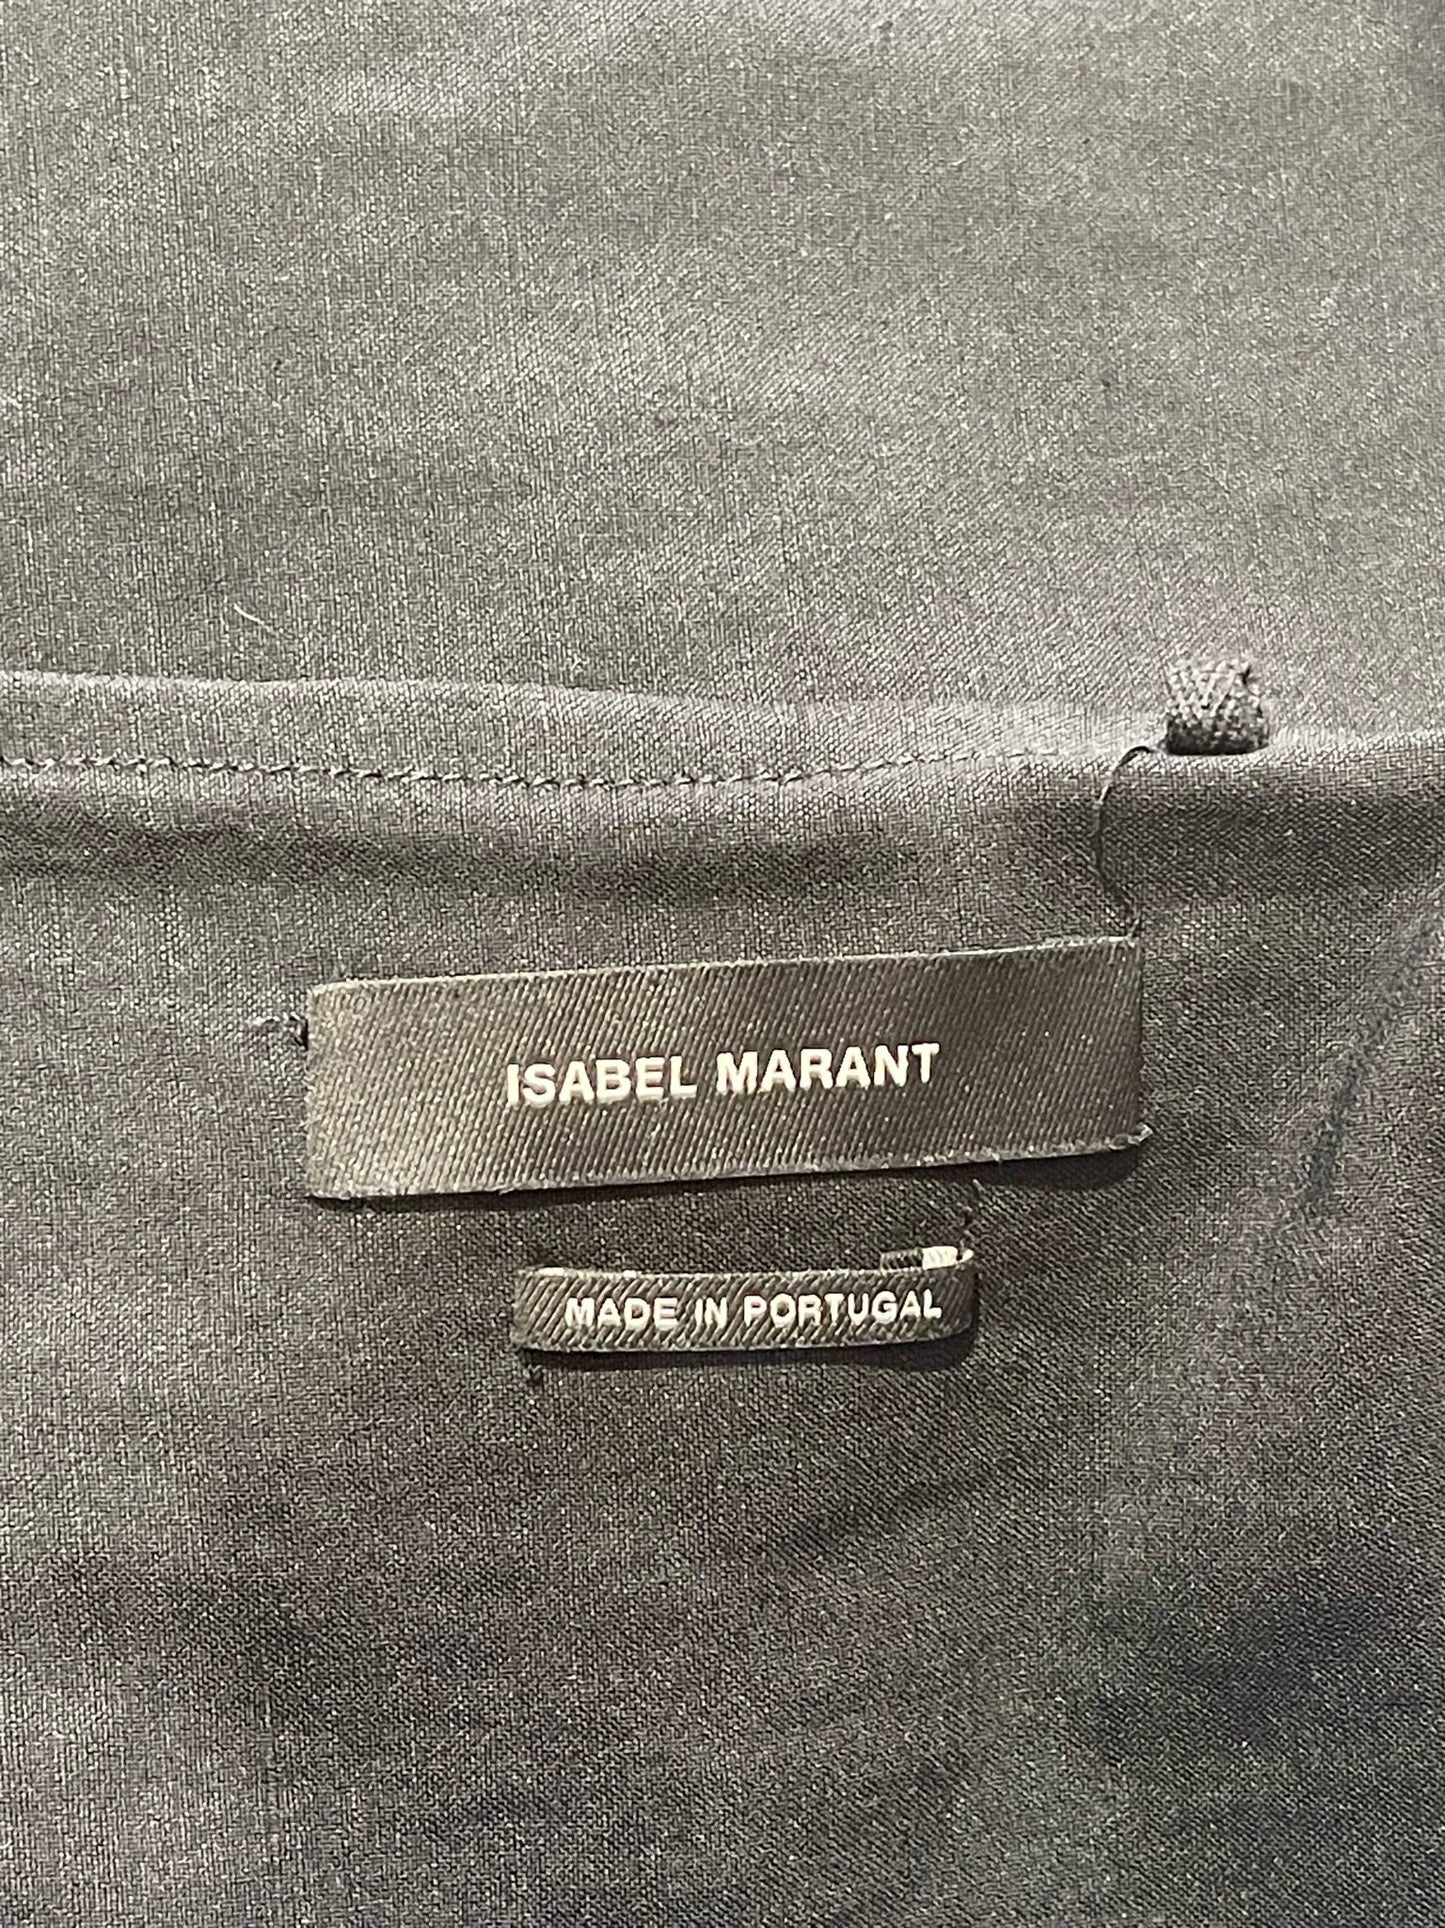 Jupe Isabel Marant noire T.34